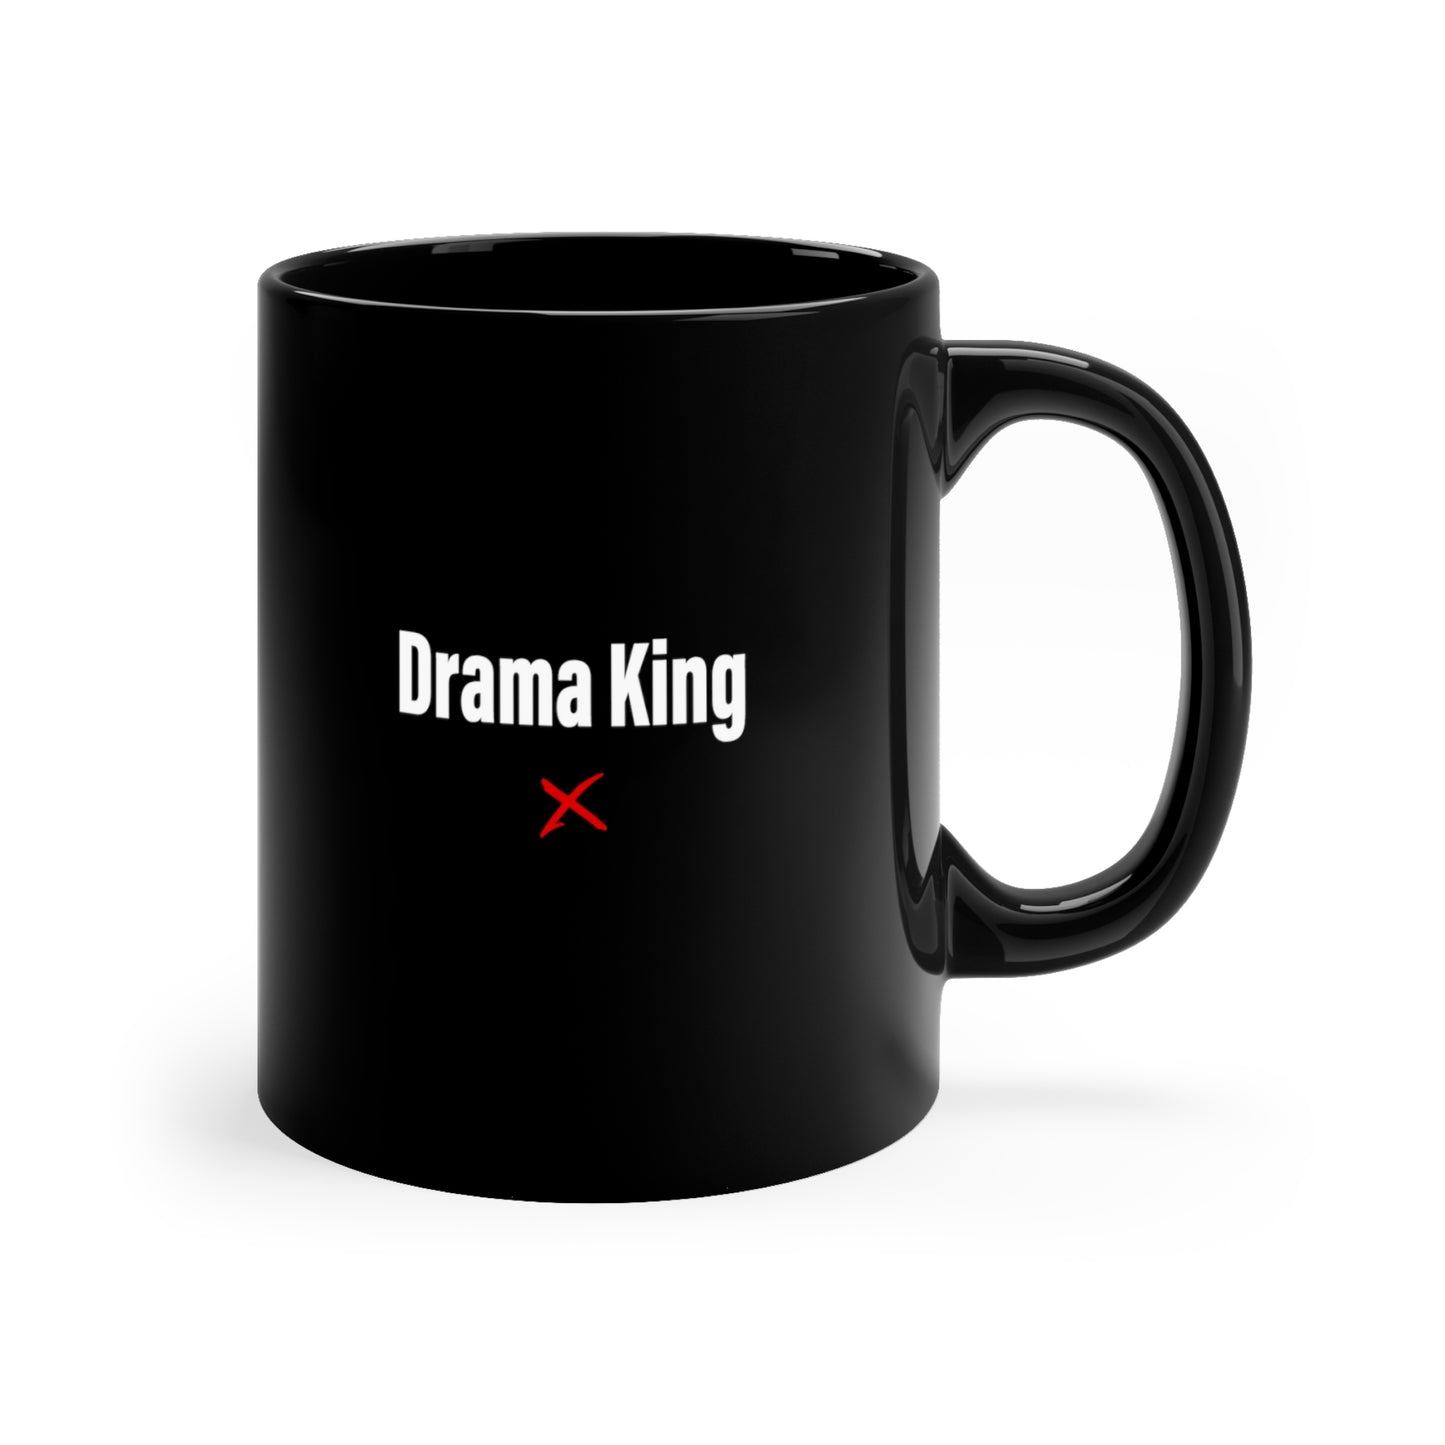 Drama King - Mug